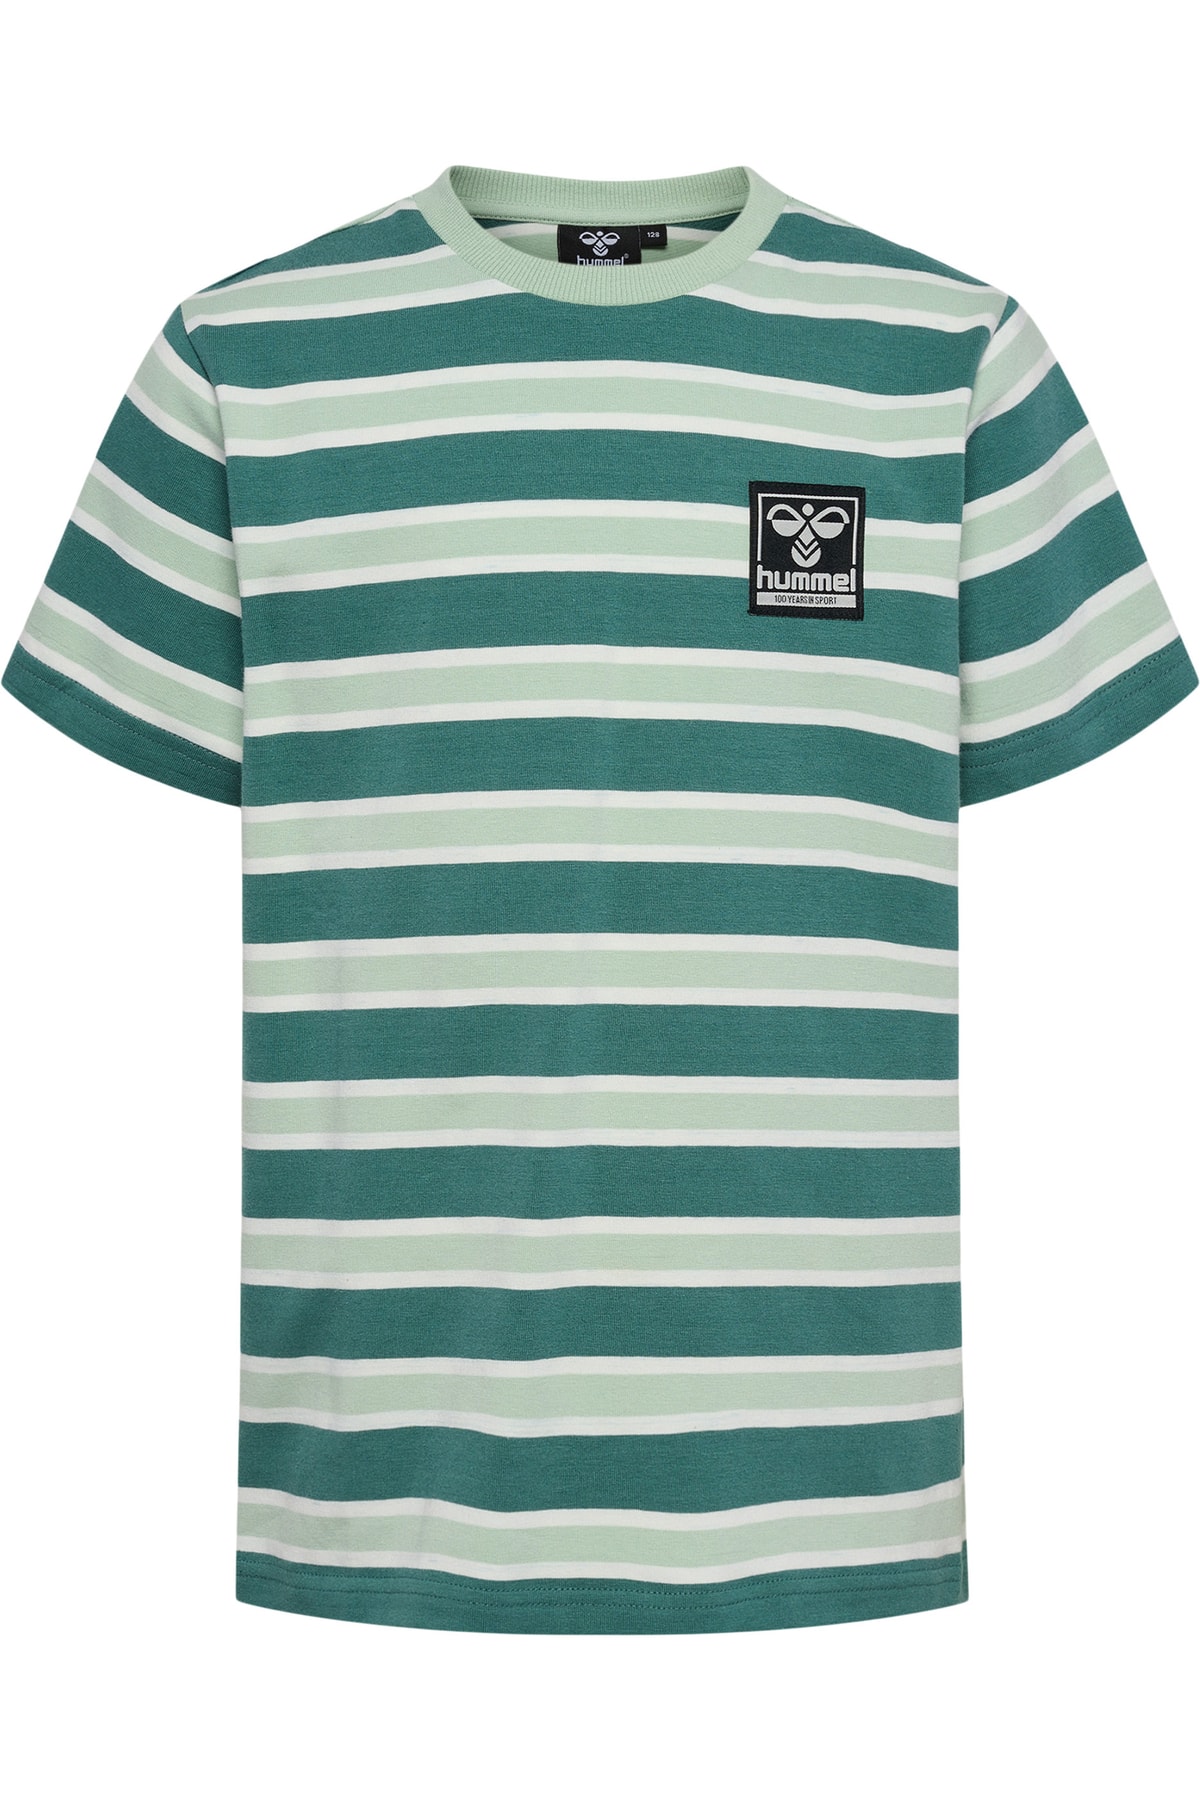 HUMMEL T-Shirt Grün Regular Fit